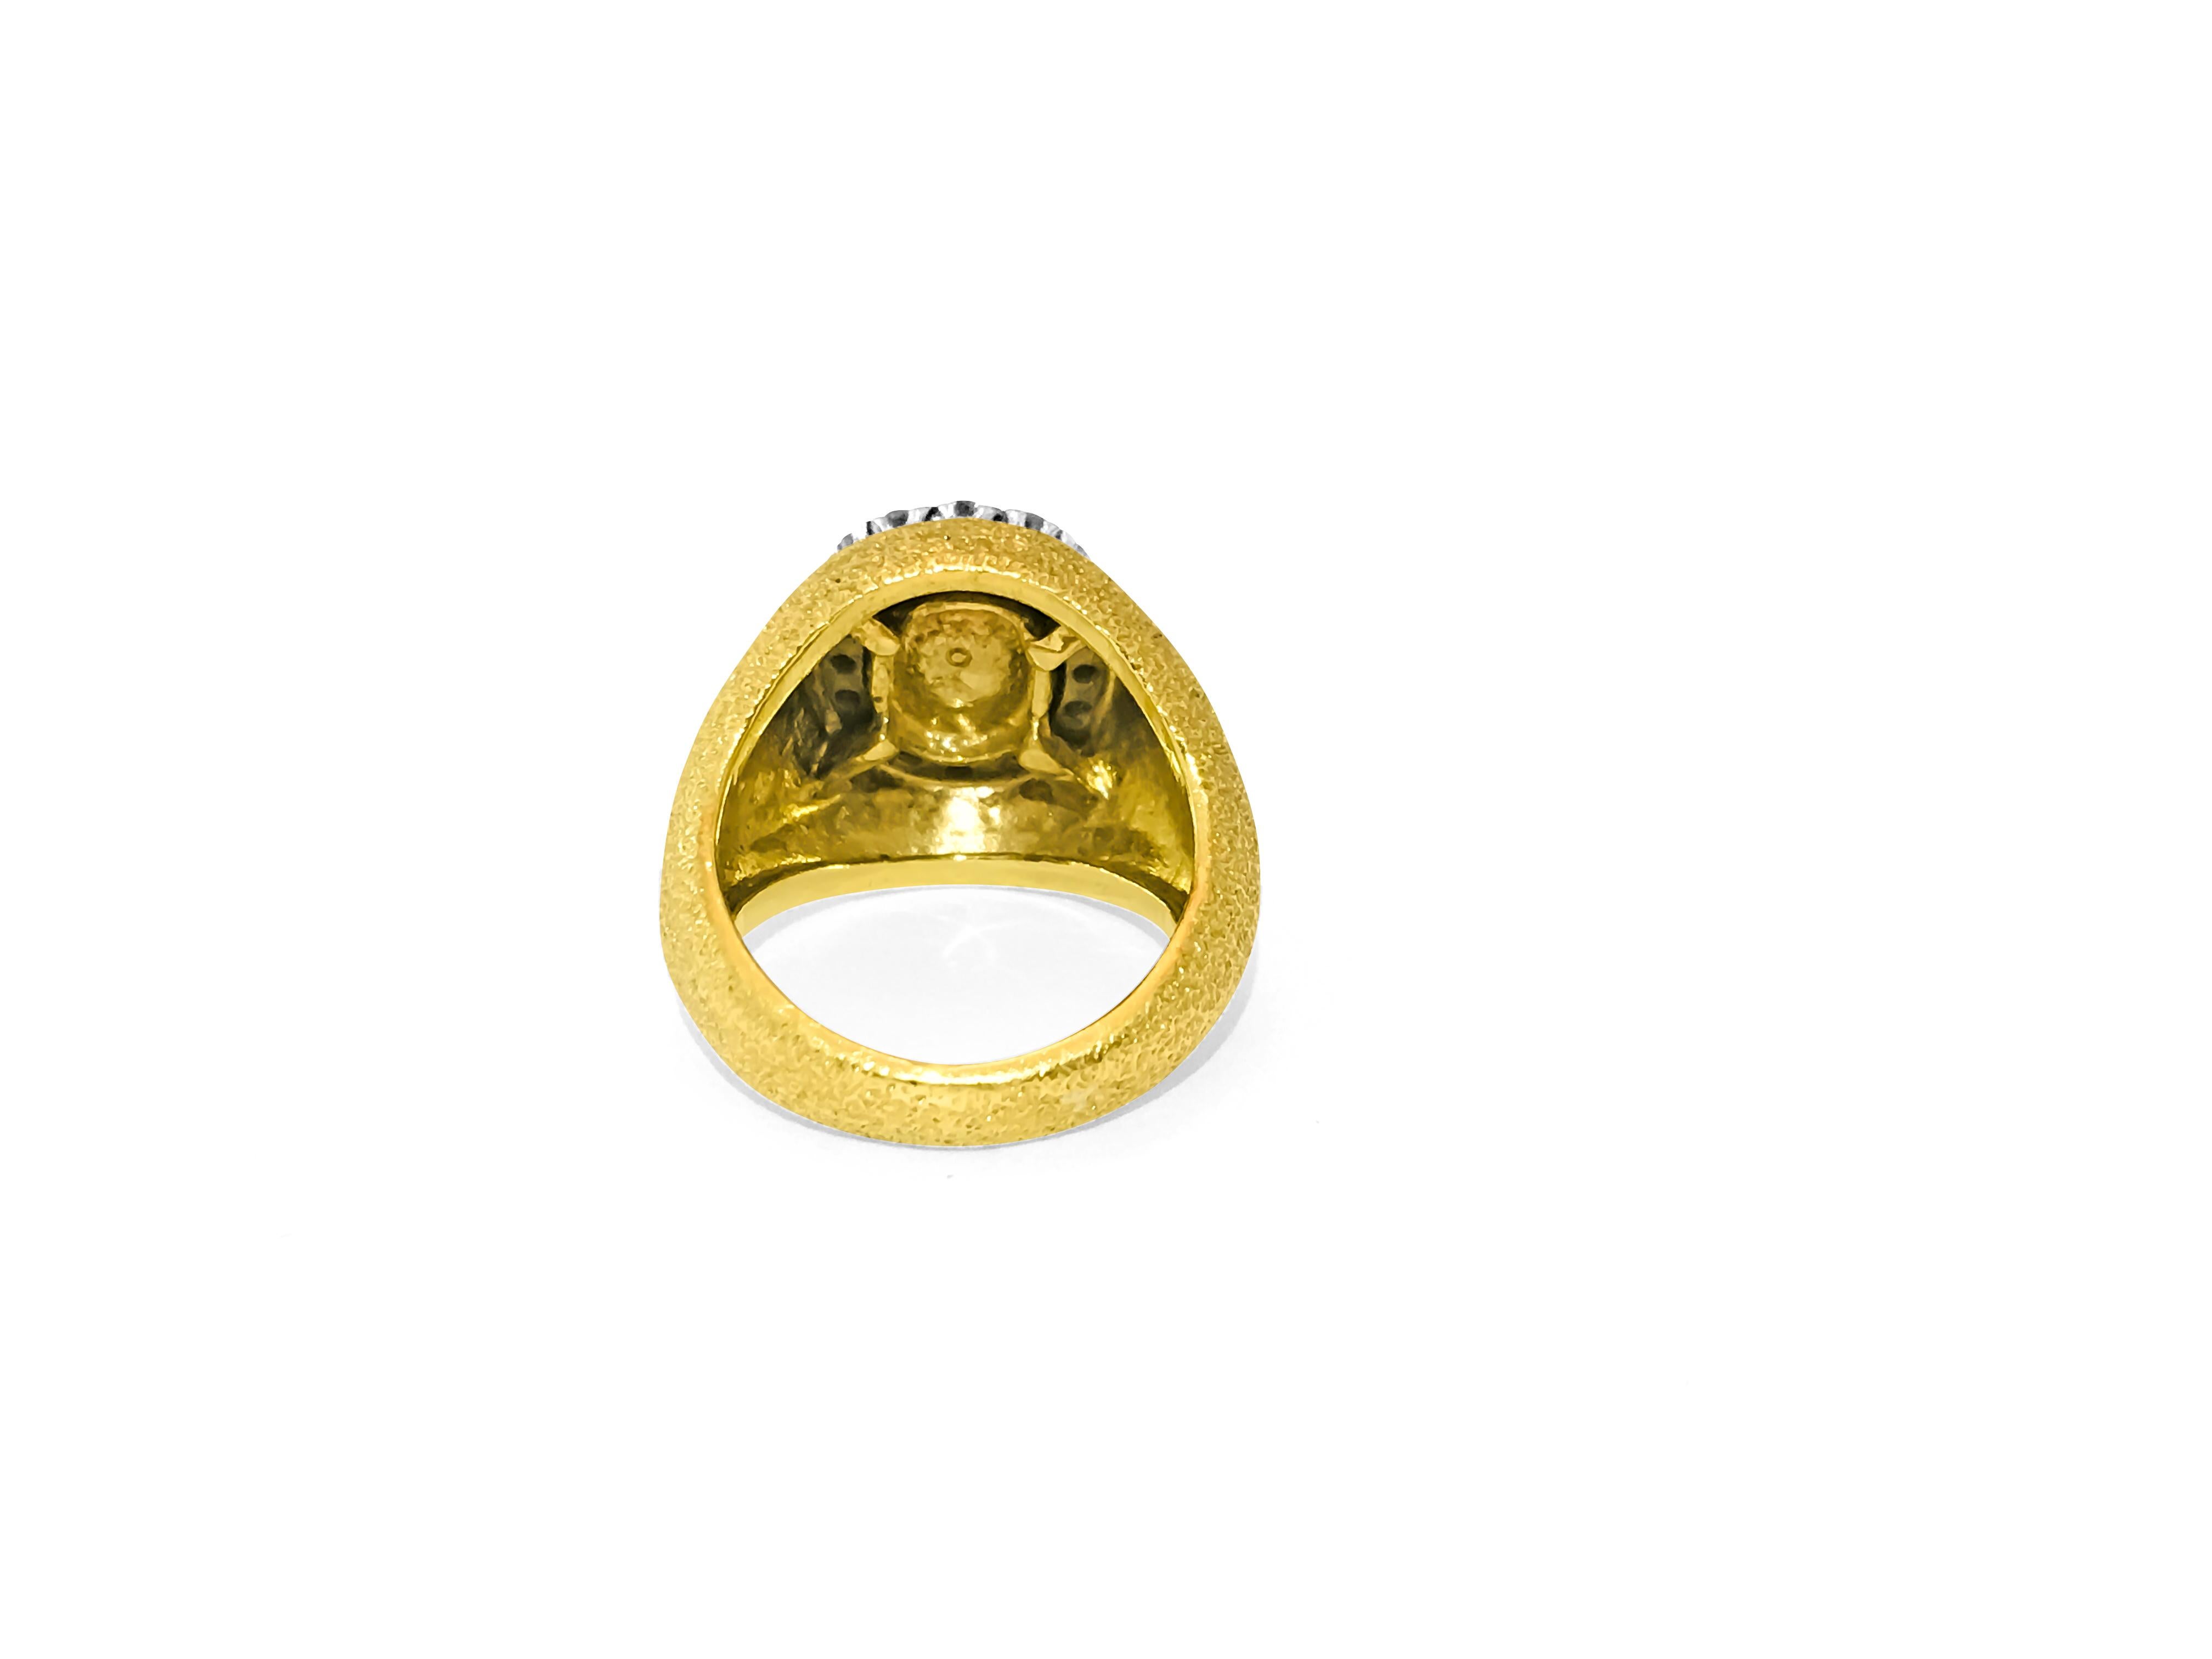 Dieser Ring im Vintage-Mogul-Stil besteht aus 18 Karat Gelbgold und ist mit einem ovalen kolumbianischen Smaragd von 2,5 Karat besetzt. Der Smaragd hat eine intensive grüne Farbe und einen außergewöhnlichen Glanz, der durch Diamanten der Farbe F und